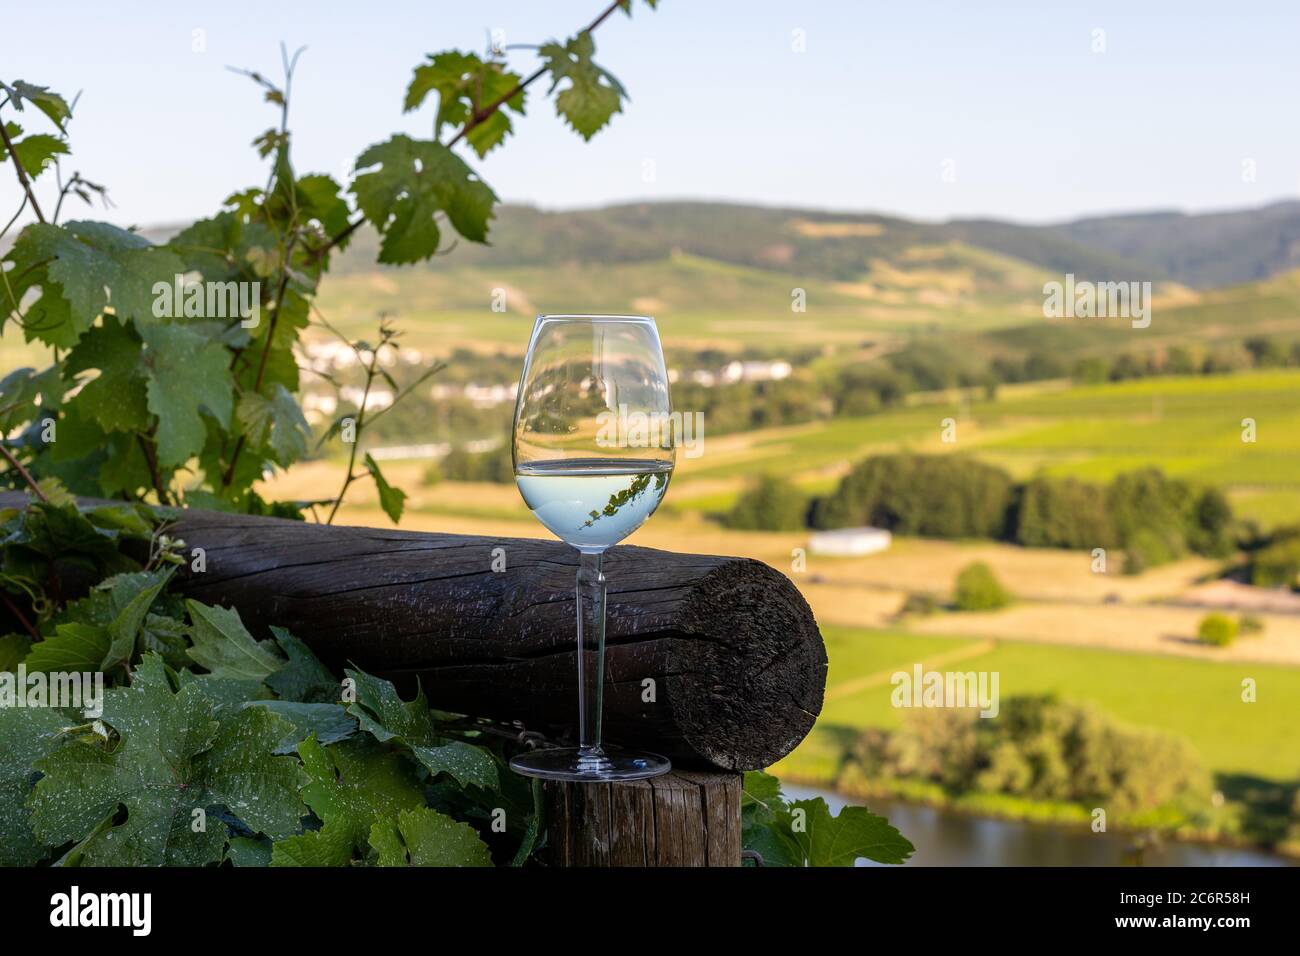 Gefülltes Weinglas neben Holzbalken und Tal der Mosel im Hintergrund  Stockfotografie - Alamy